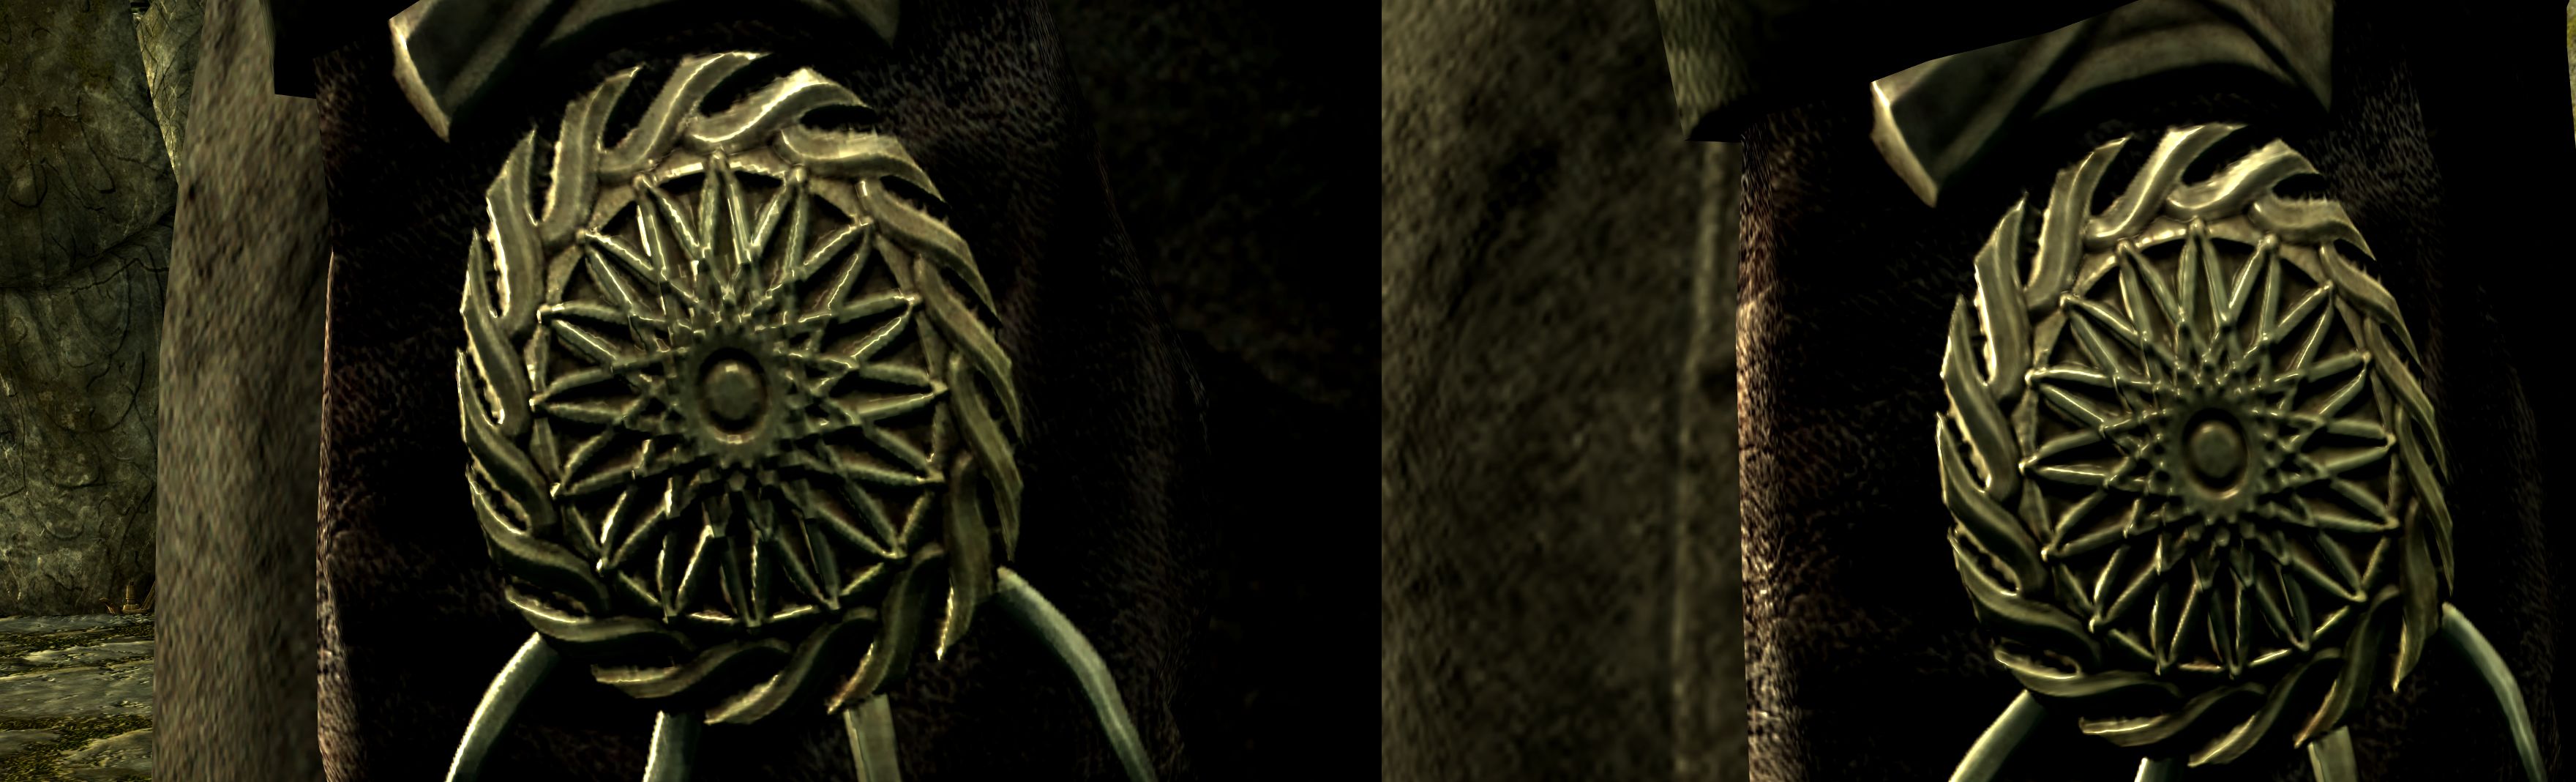 Пример сравнения старых (слева) и новых (справа) текстур для Skyrim | Источник: Nexus Mods